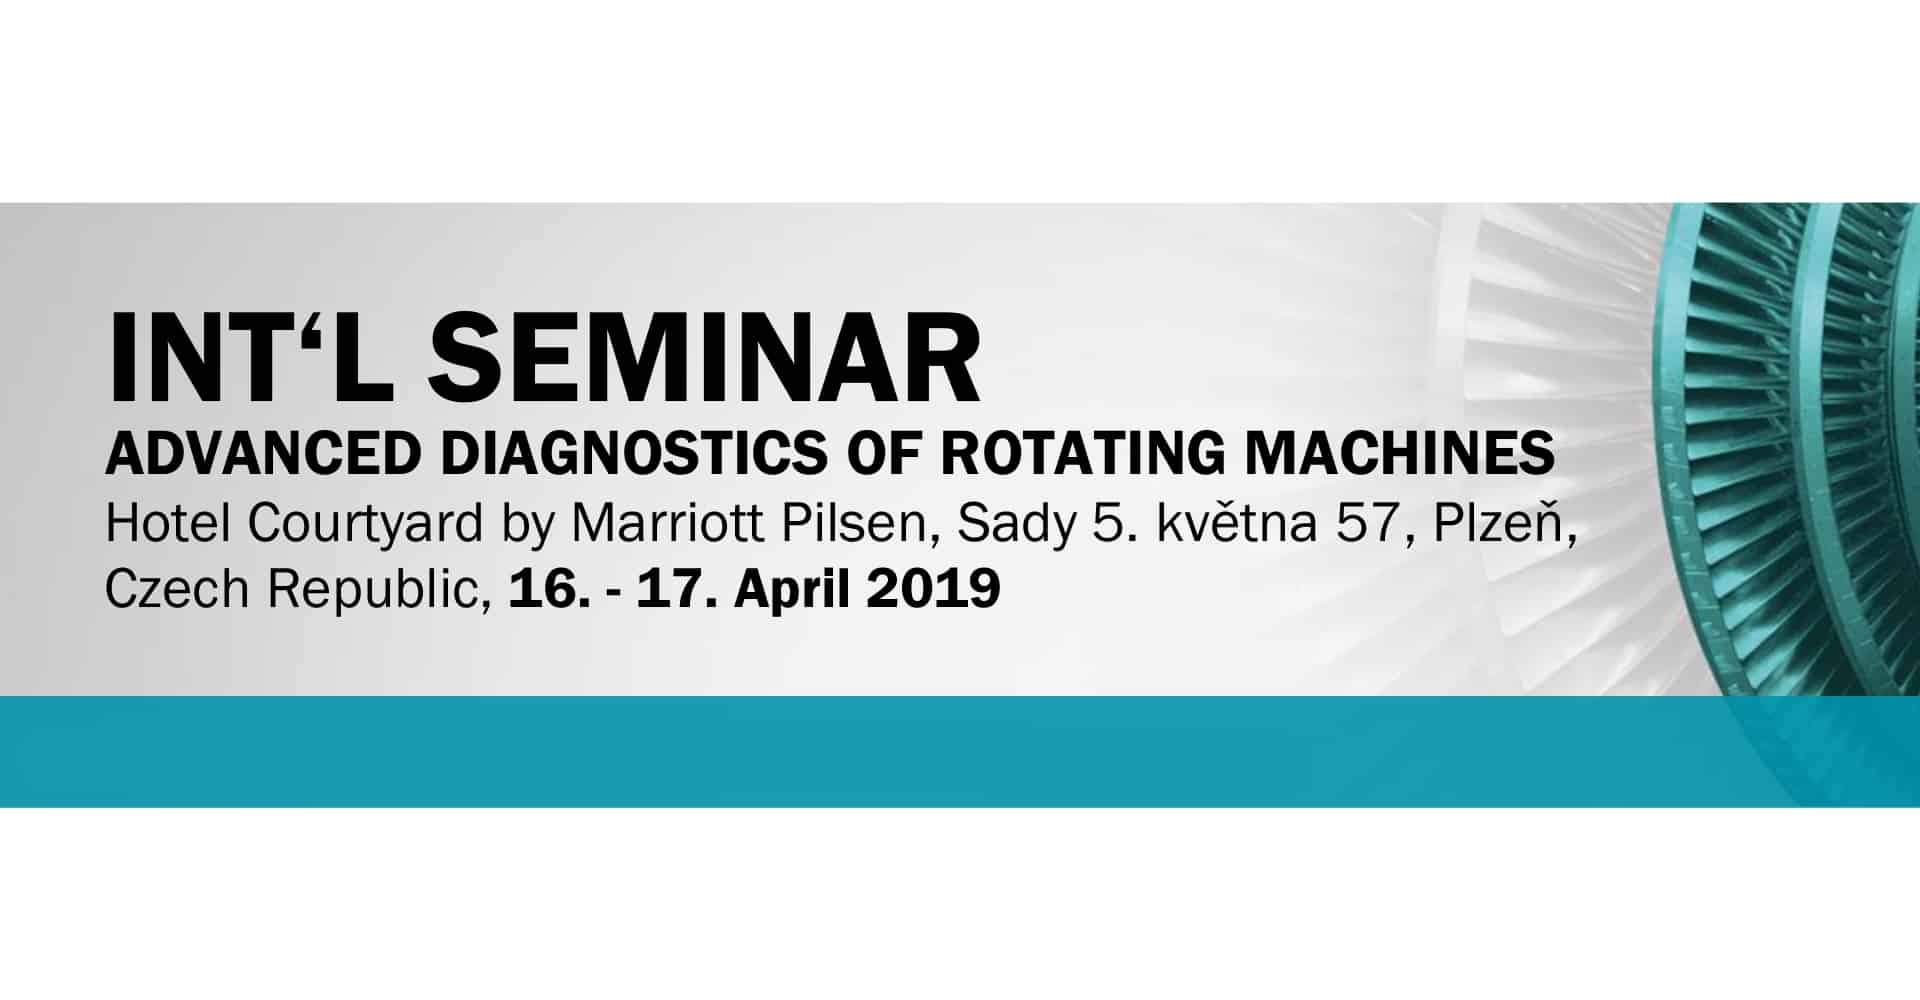 Advanced diagnostics of rotating machines seminar